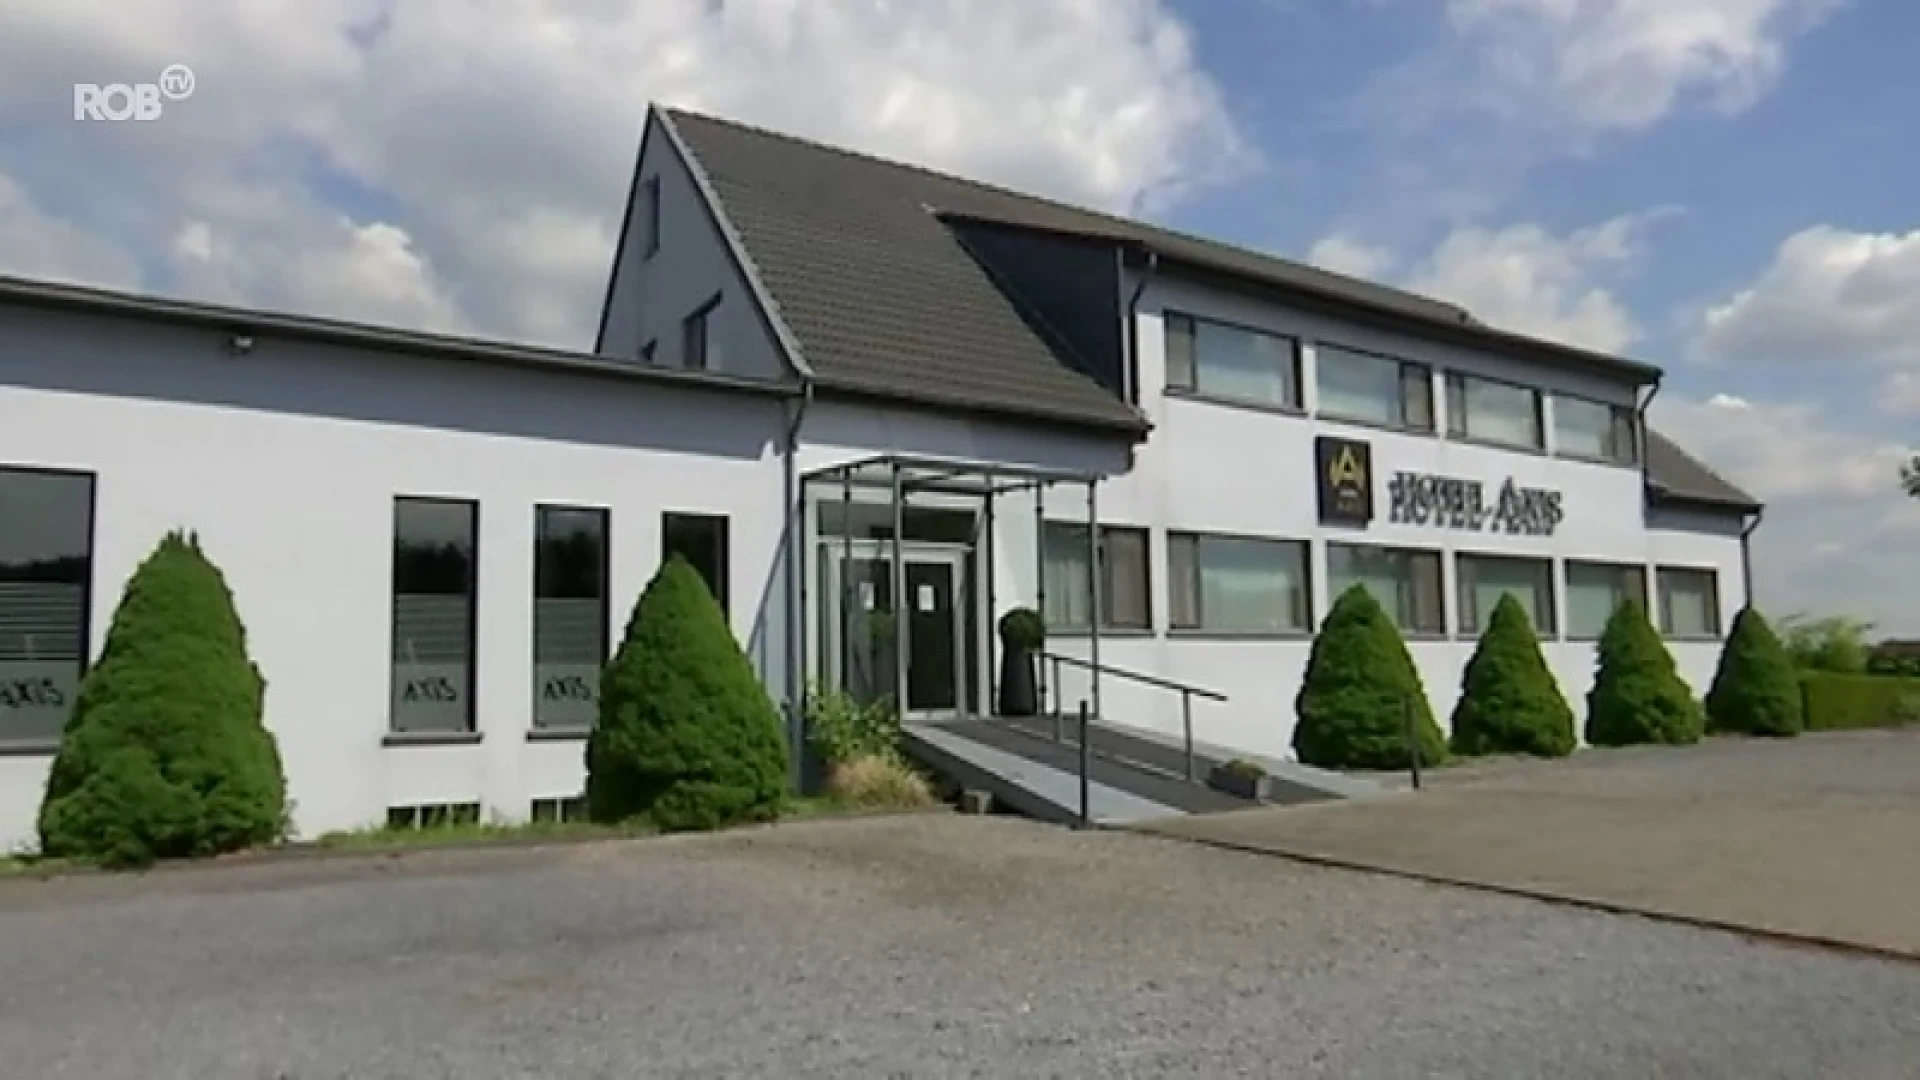 Hotel Axis in Kortenberg lijdt onder mogelijk faillissement Brussels Airlines